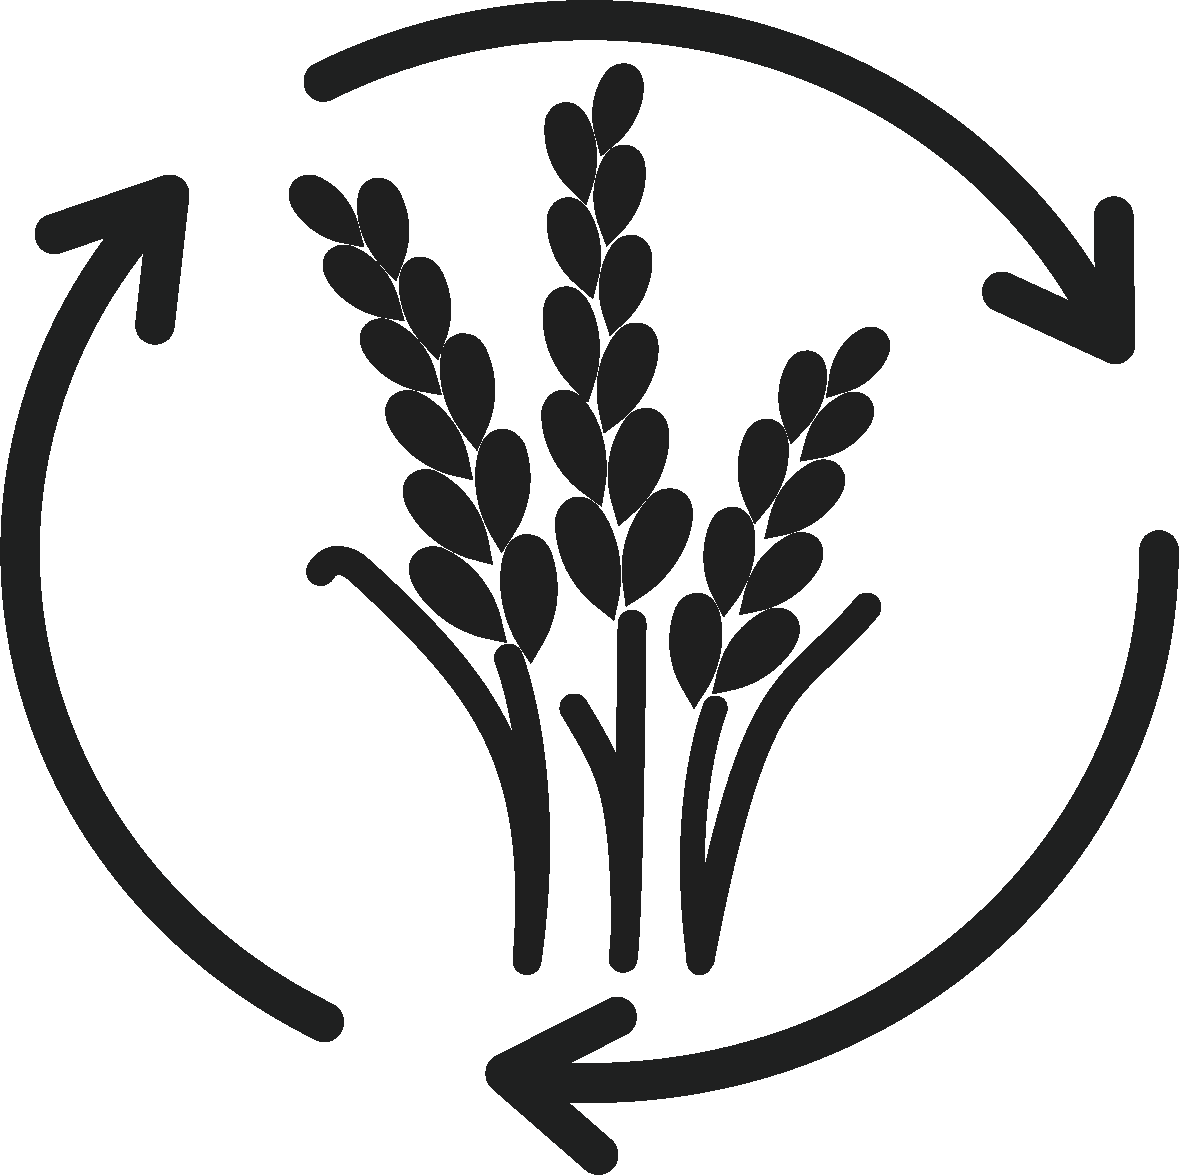 Landbruk og matproduksjon. Grafisk ikon.